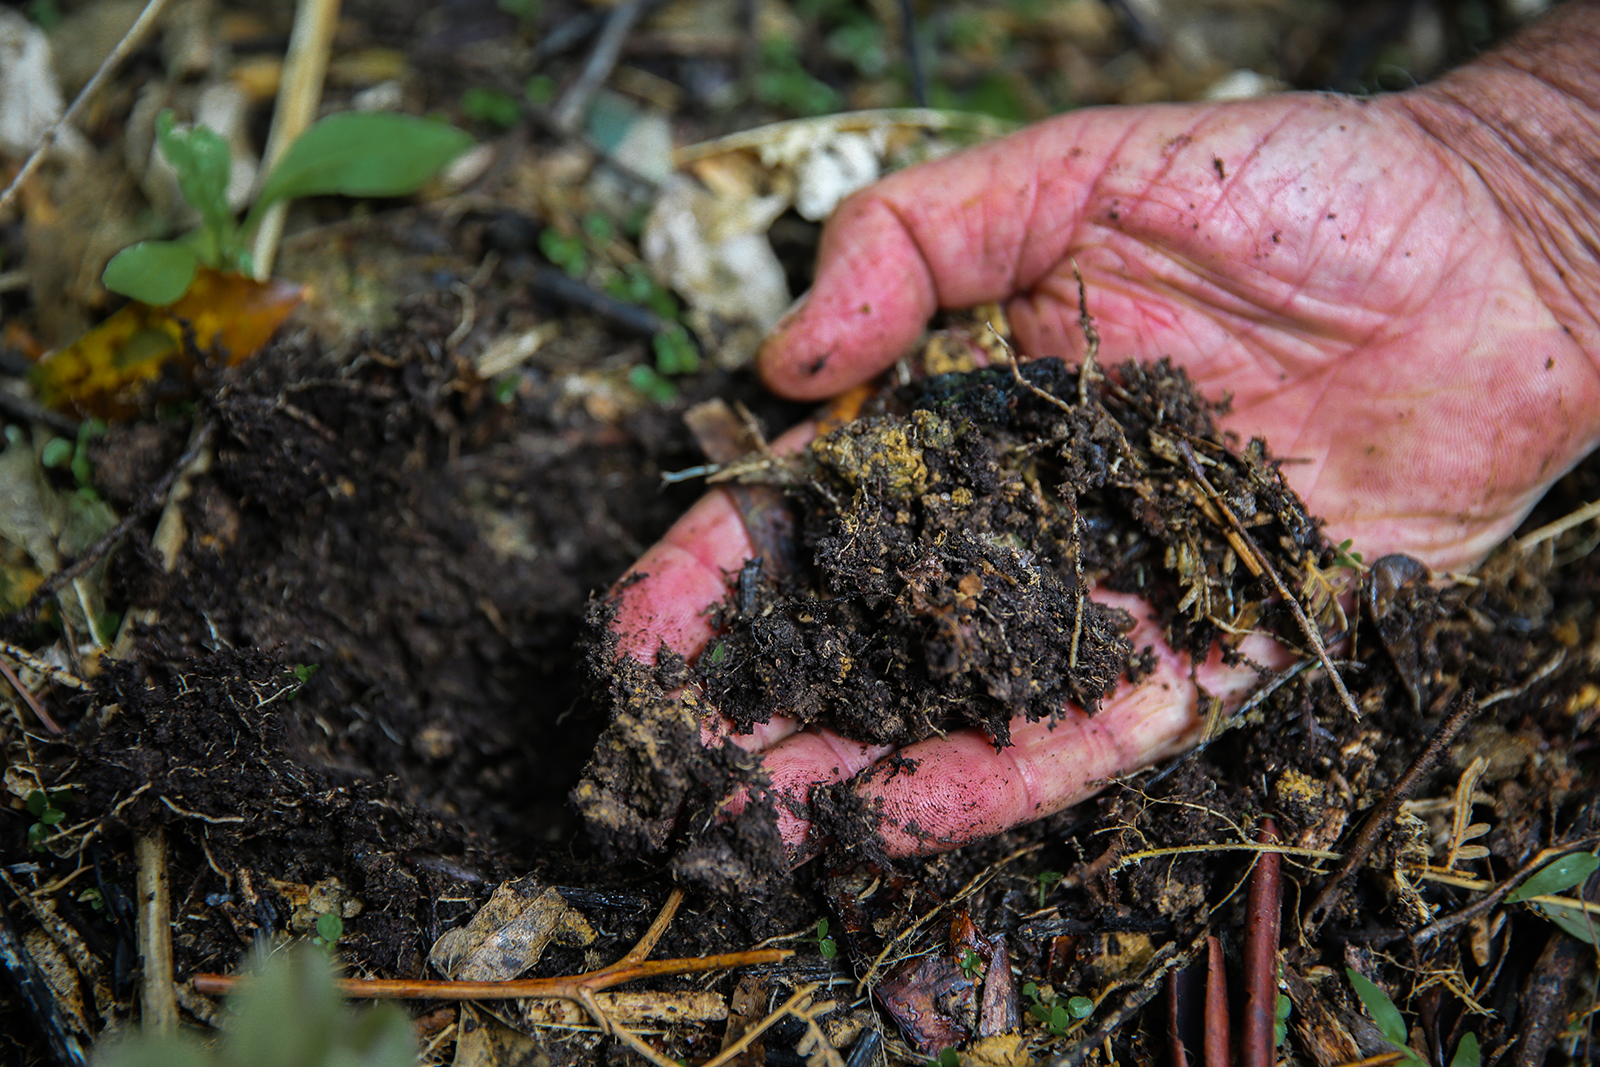 Image of hand holding dark soil matter